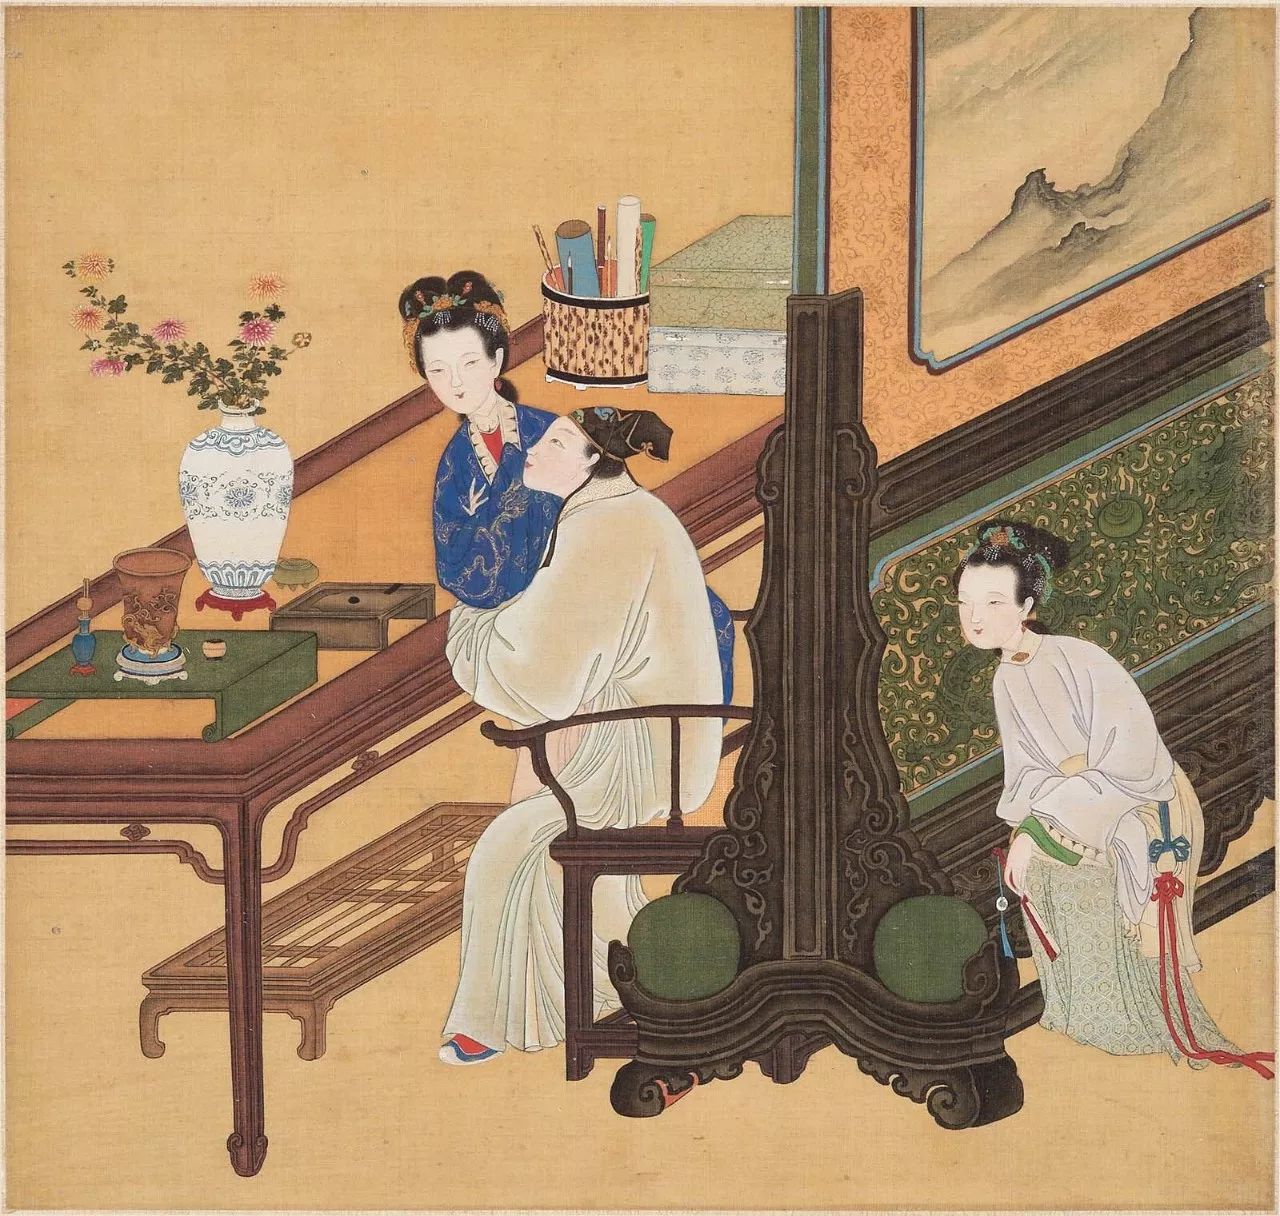 日本浮世绘风格的春画-图库-五毛网